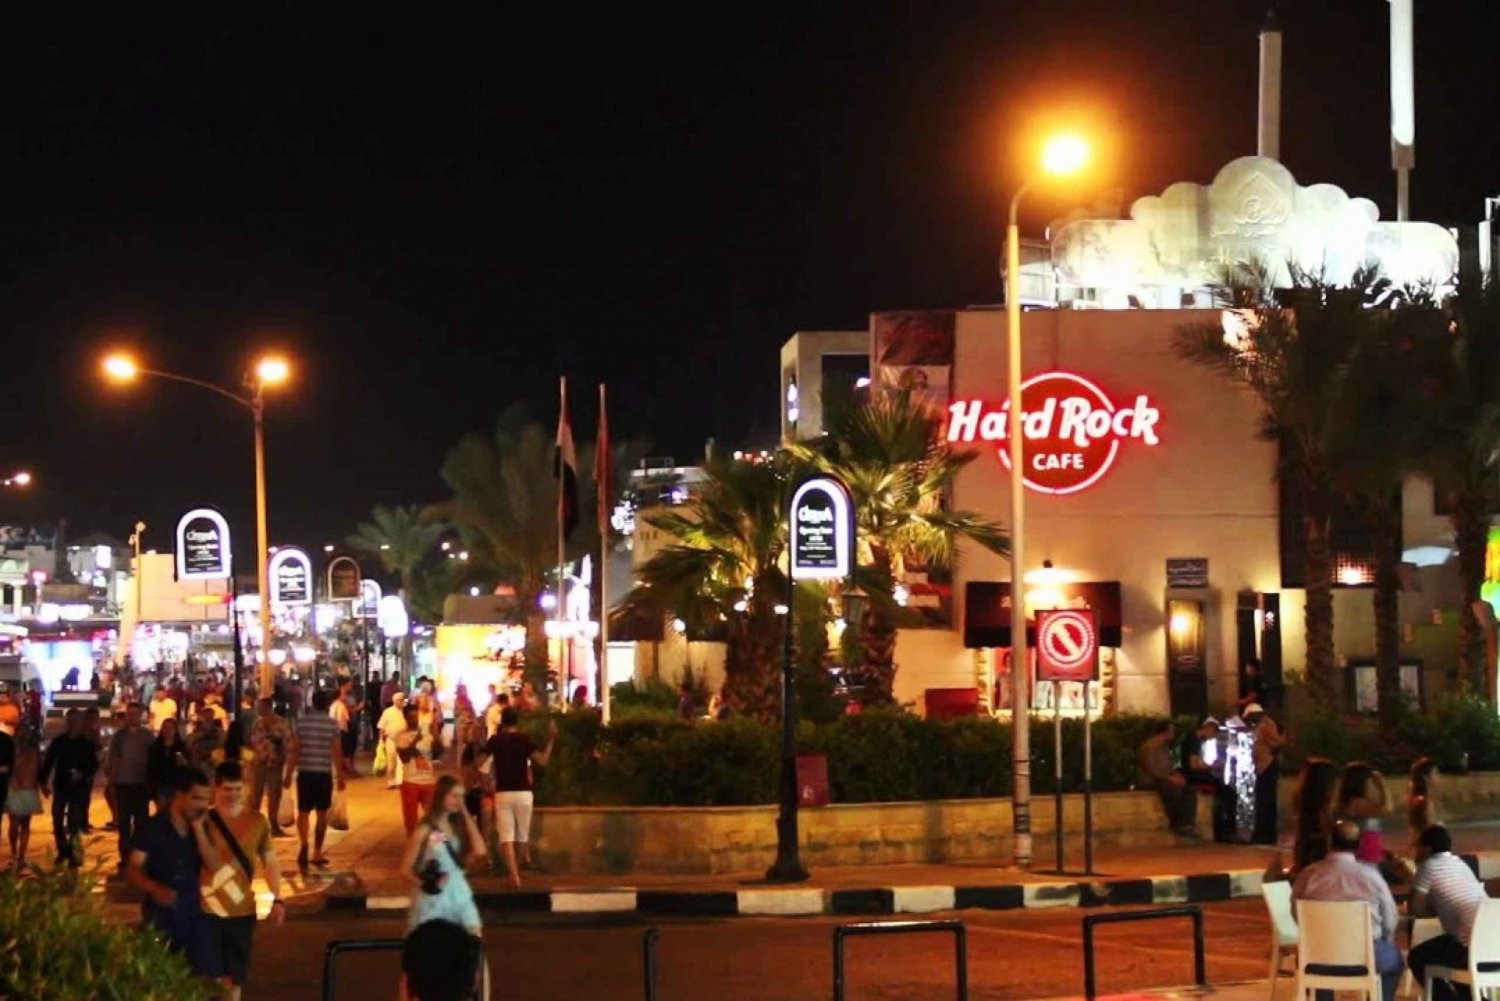 Sharm el-Sheikh: Tur til islamiske og koptiske seværdigheder med frokost